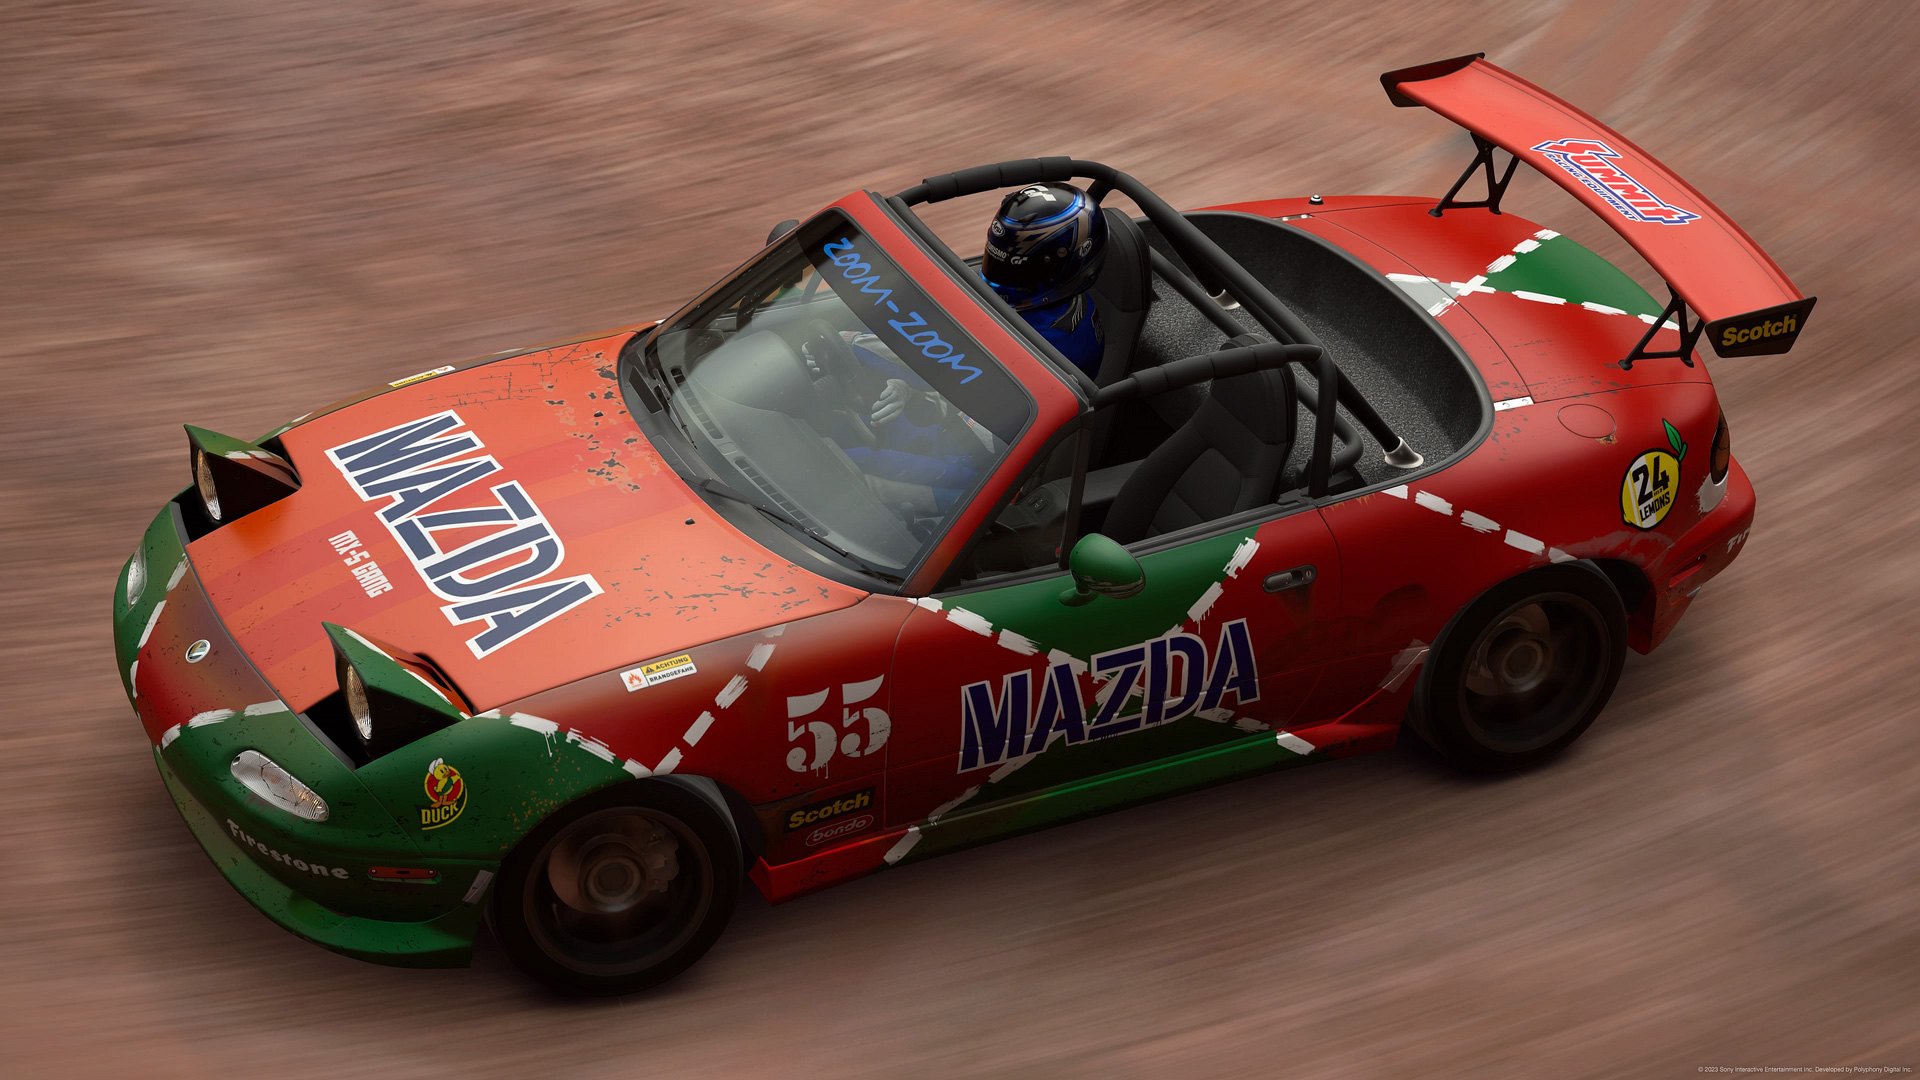 24h of LeMons Mazda Miata